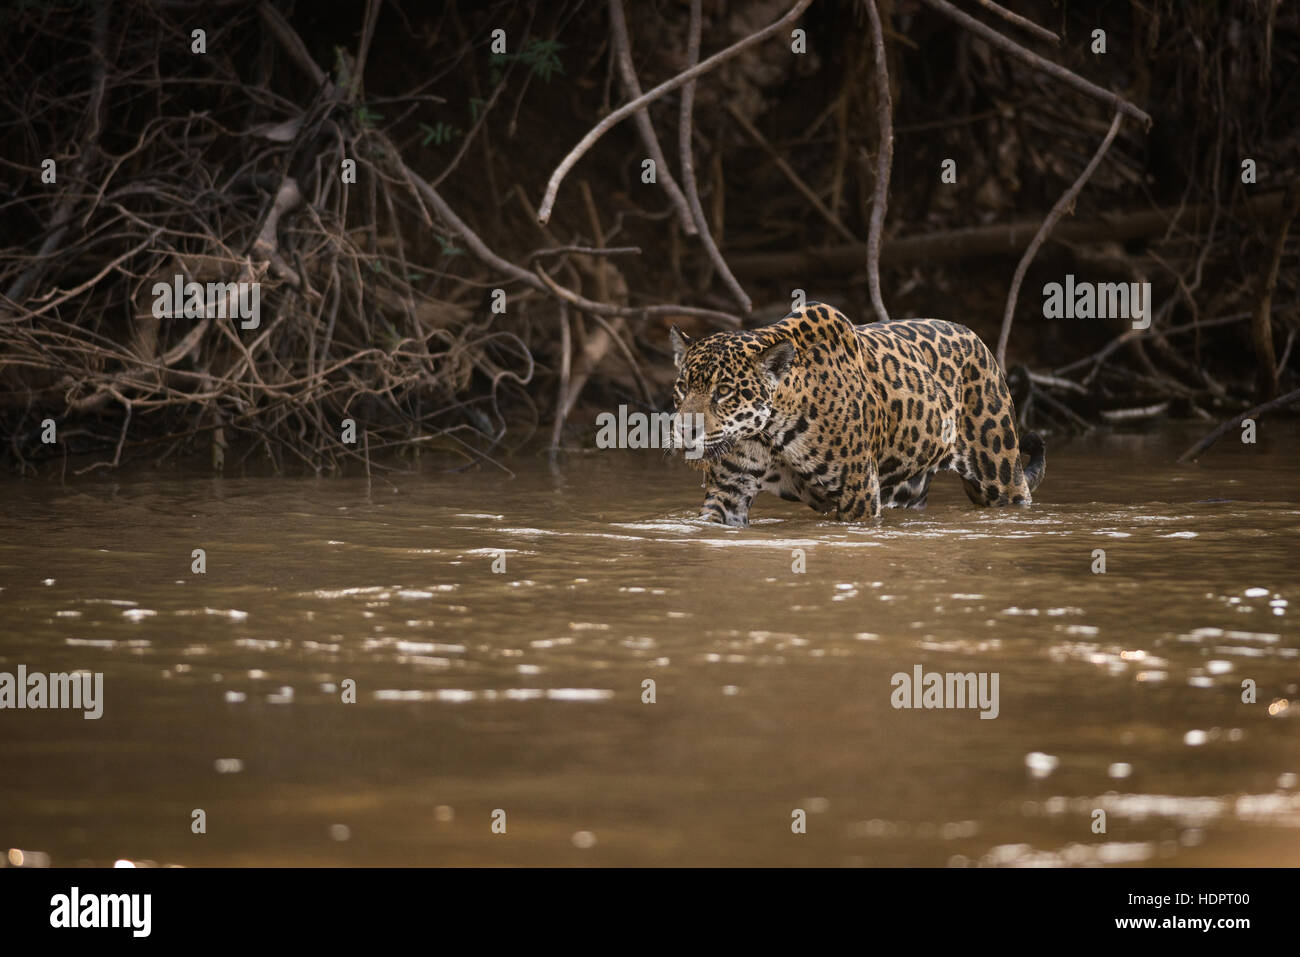 A Jaguar patrols a river shoreline, looking for prey Stock Photo